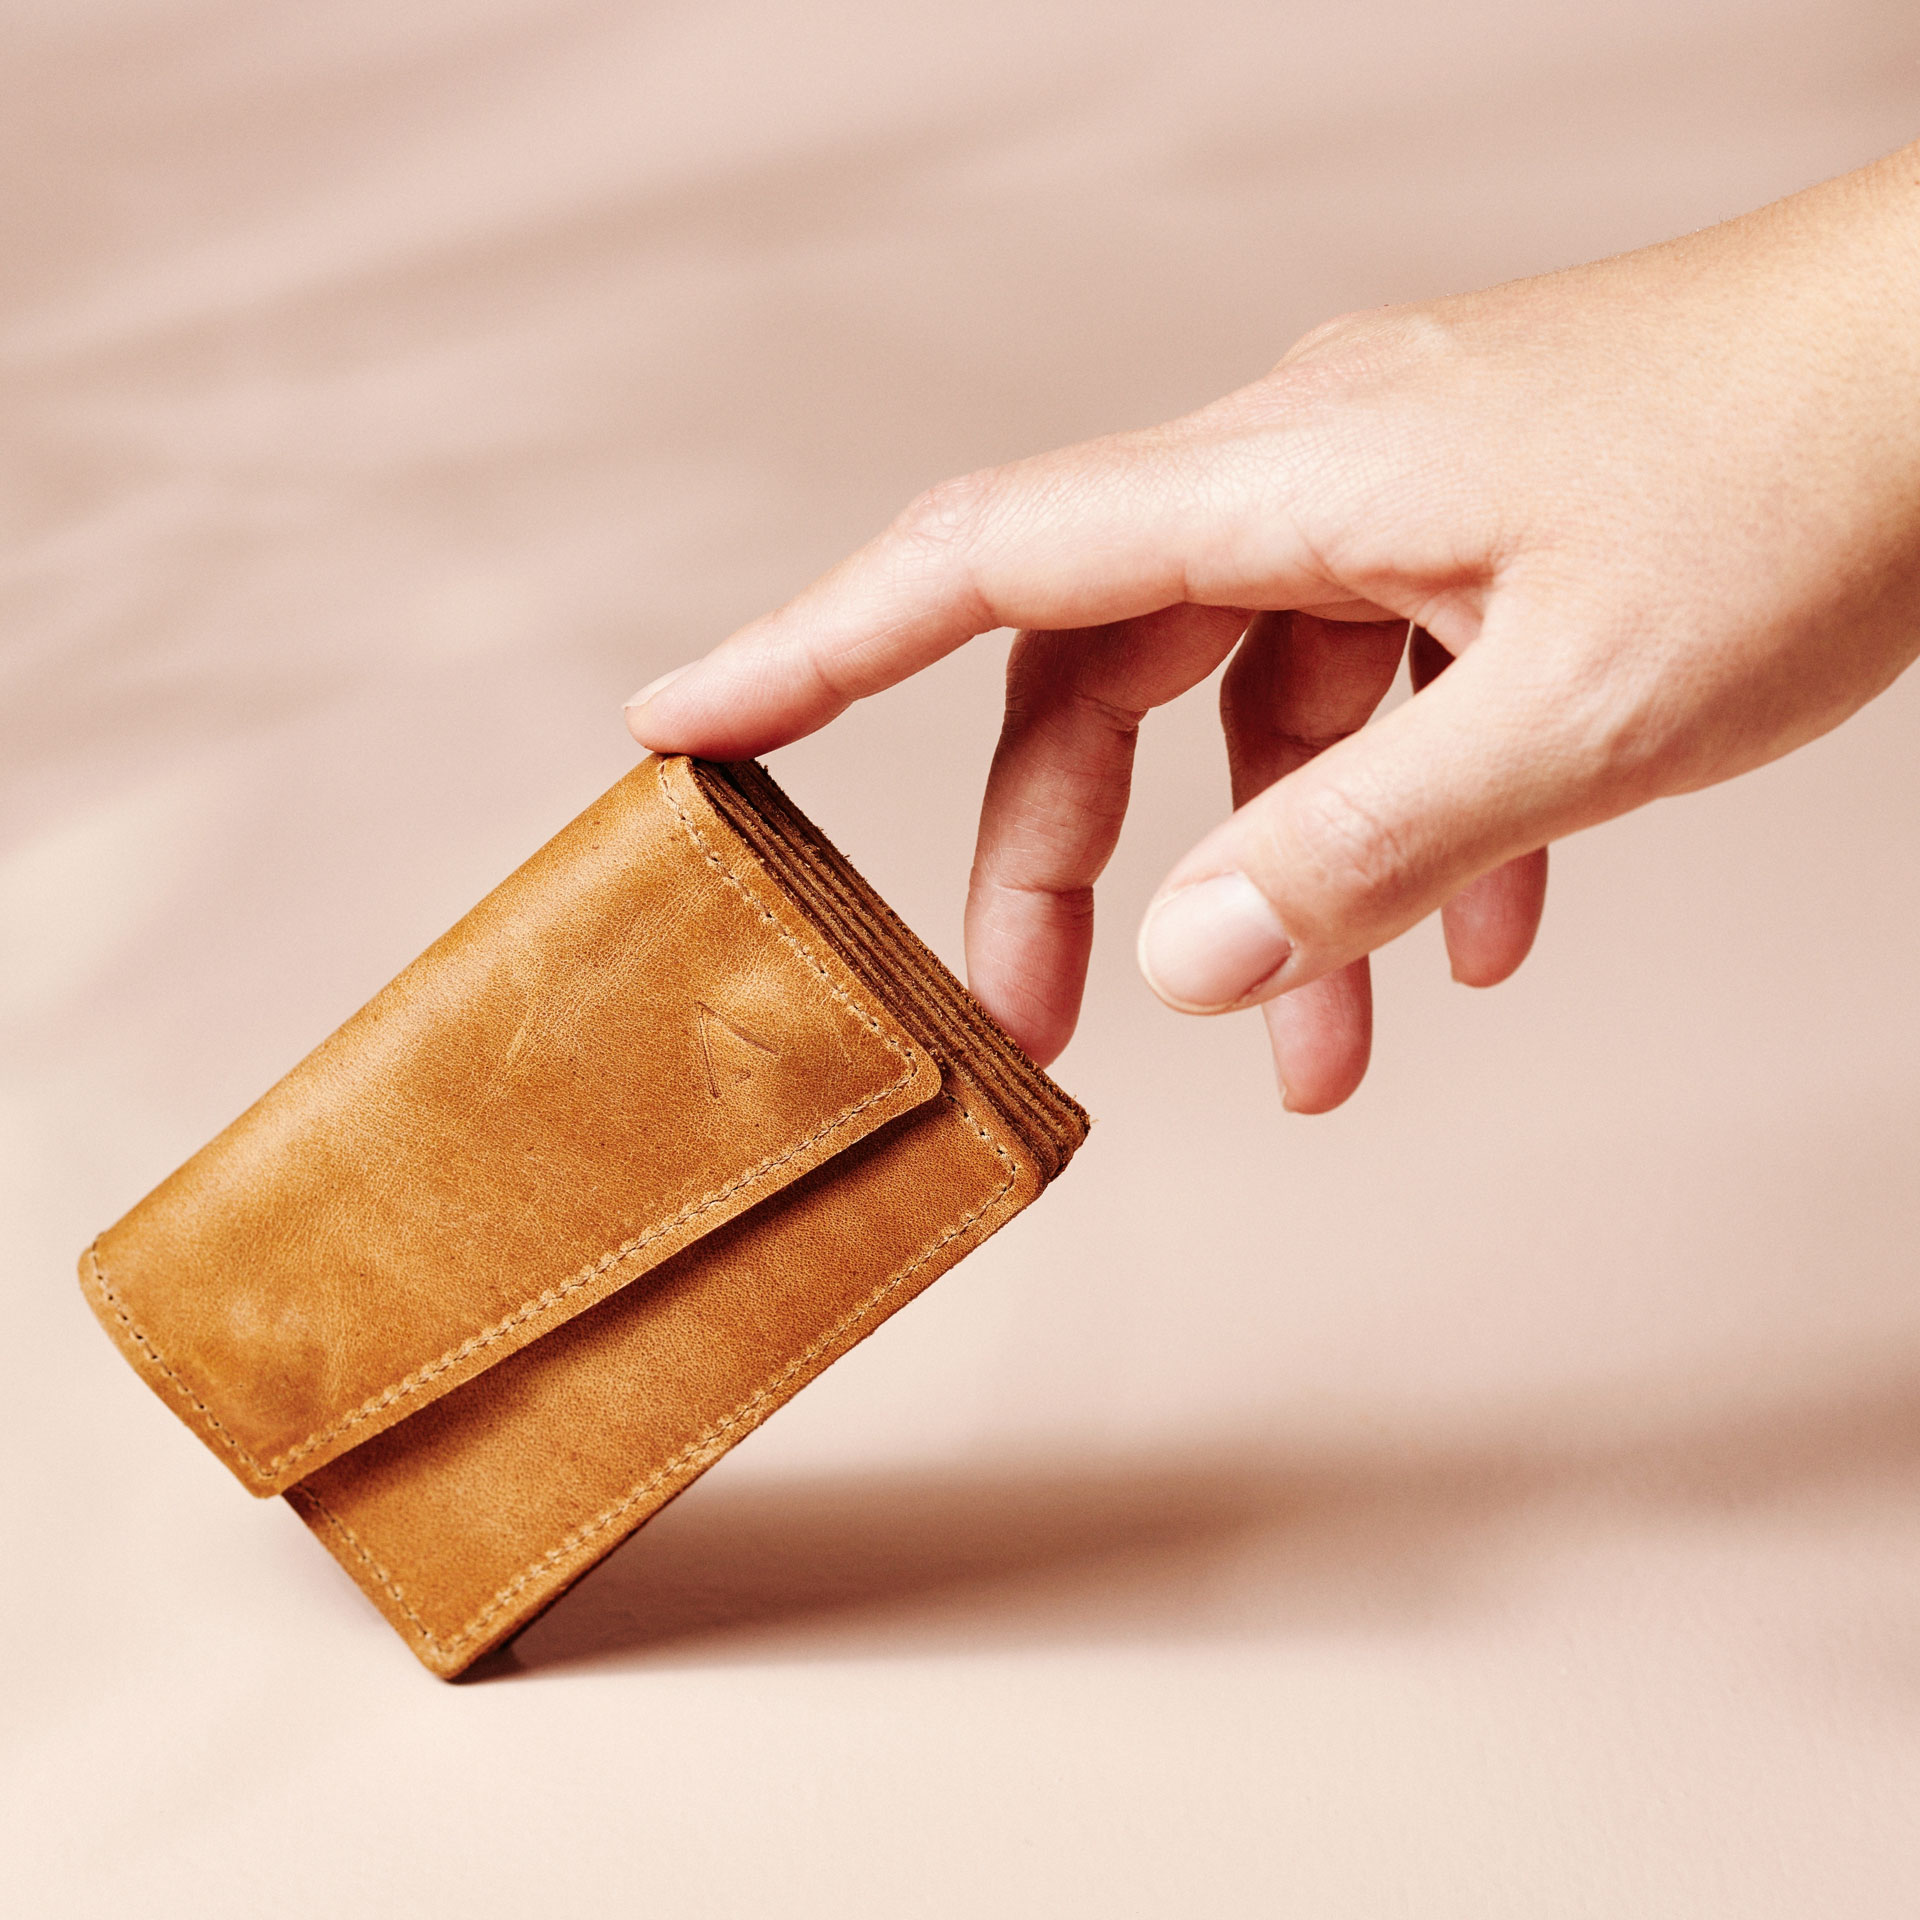 Unser kleine Portemonnaie ist im Vergleich etwas kleiner als eine Hand.